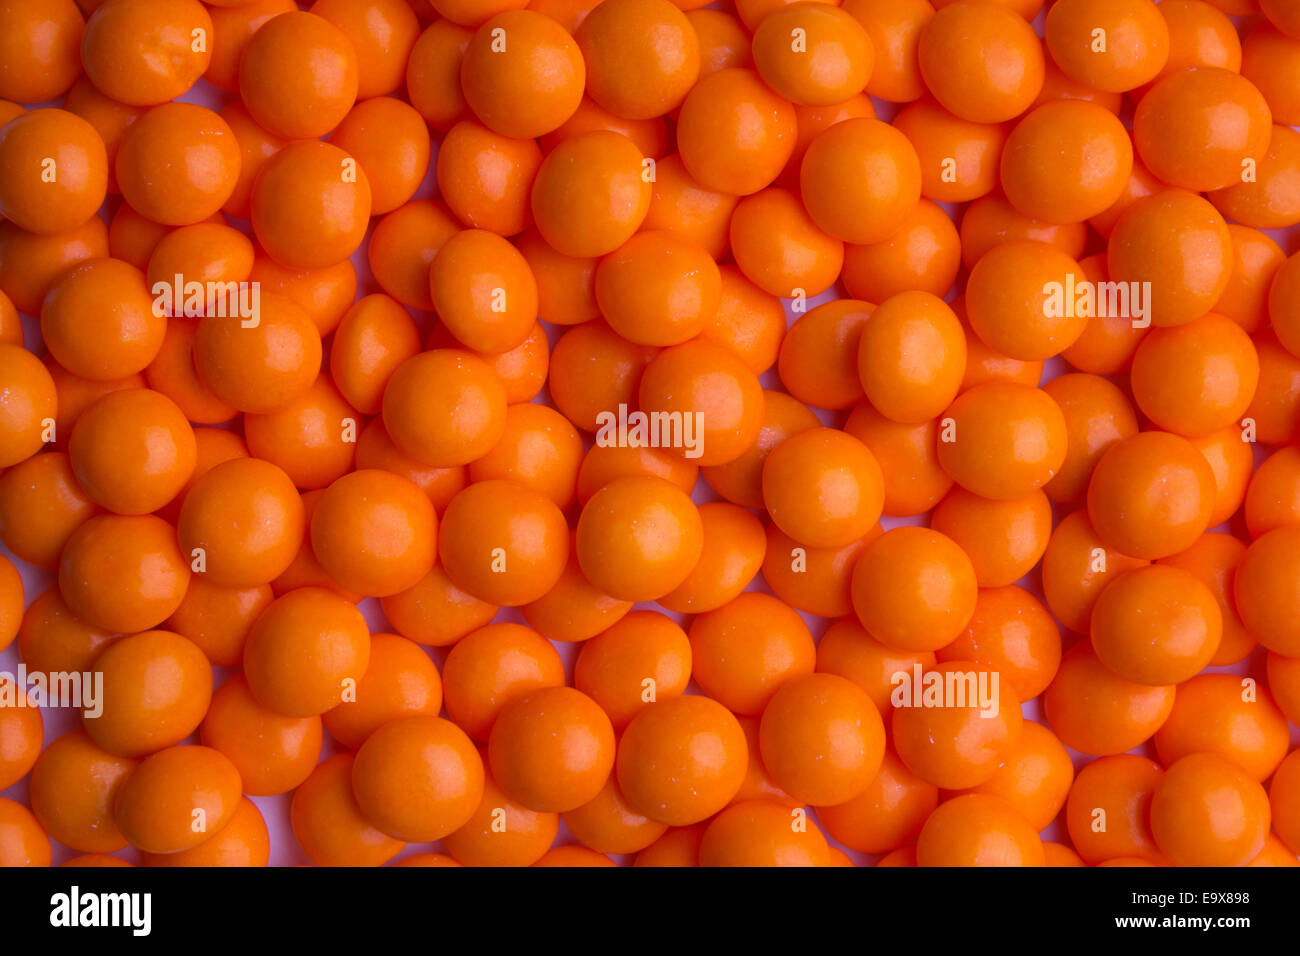 Background of coated orange candy Stock Photo